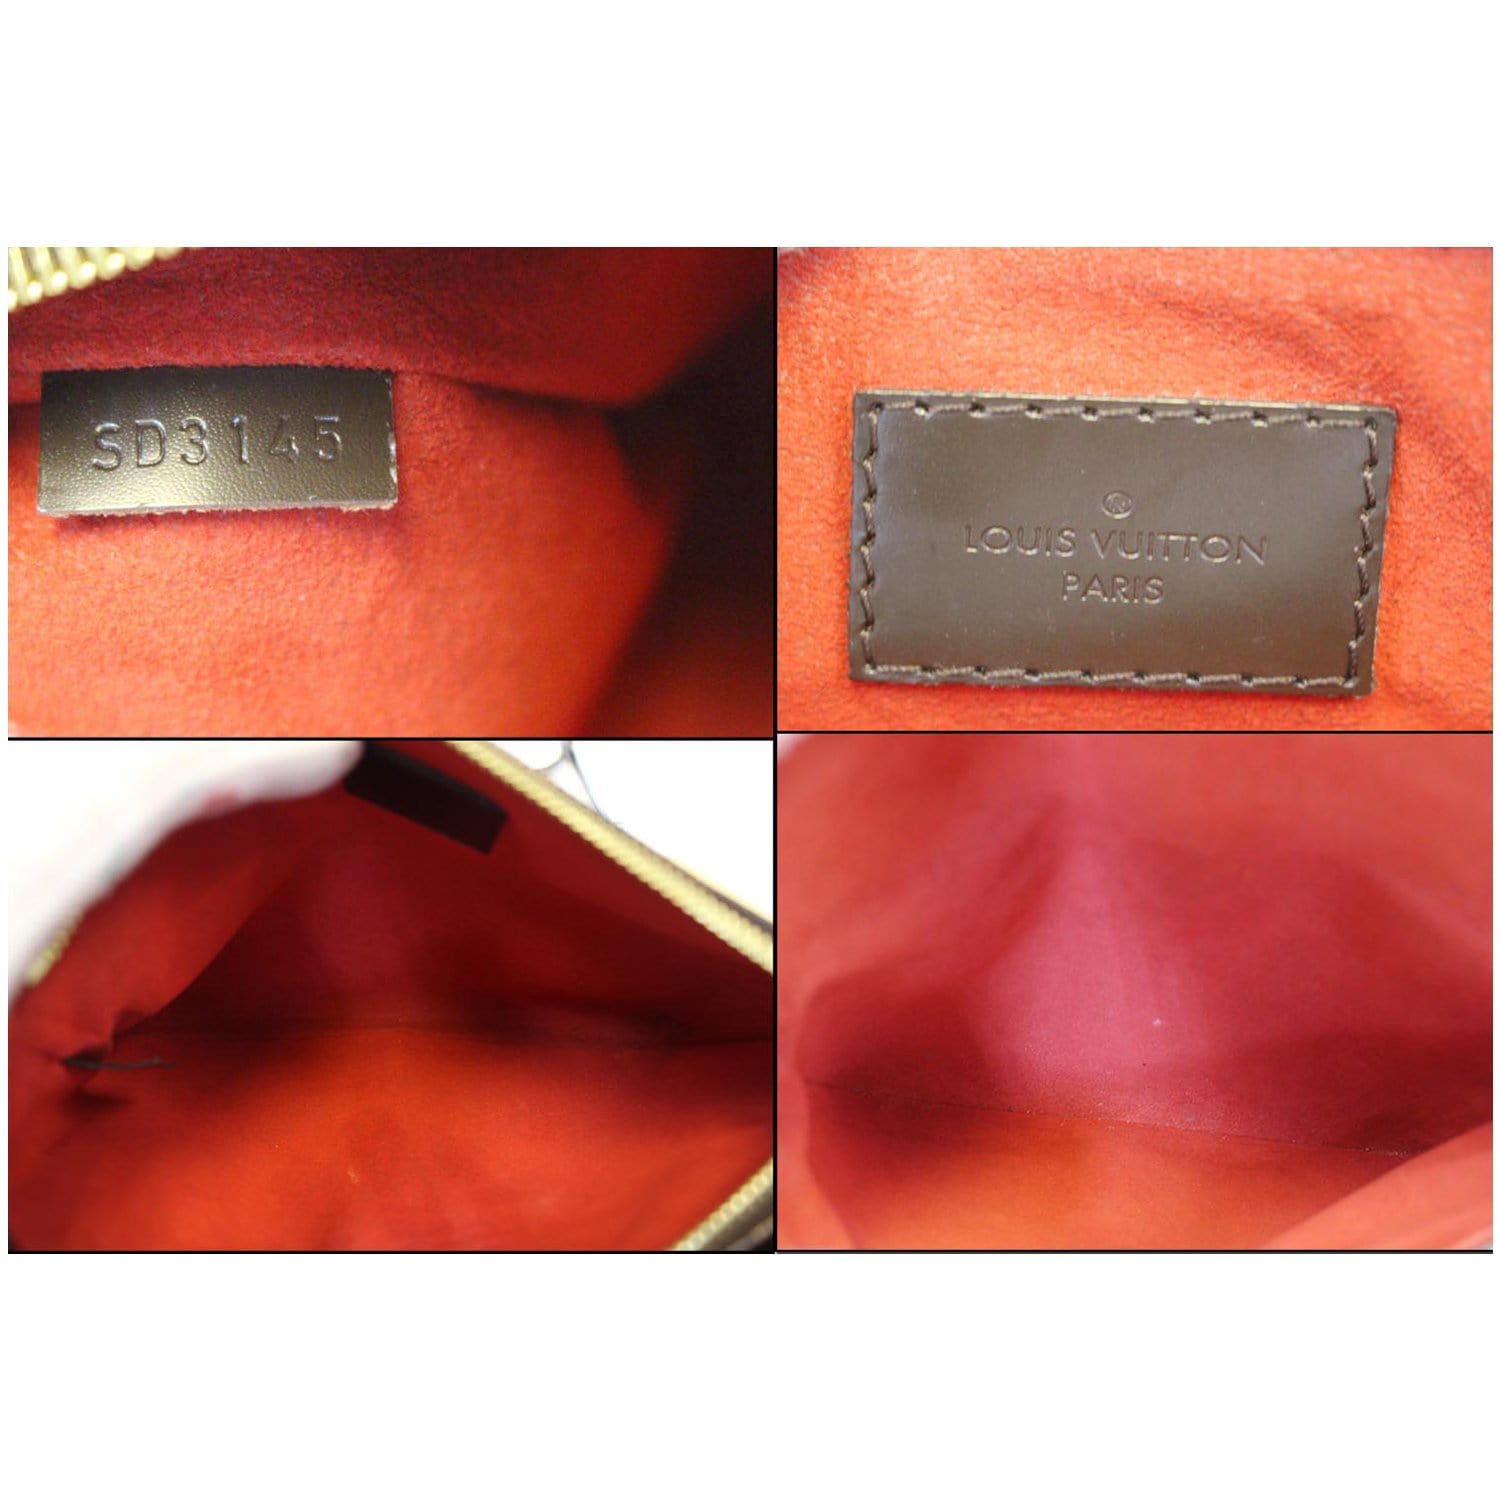 Authentic Louis Vuitton Twice Crossbody Shoulder Bag Damier Ebene N48259